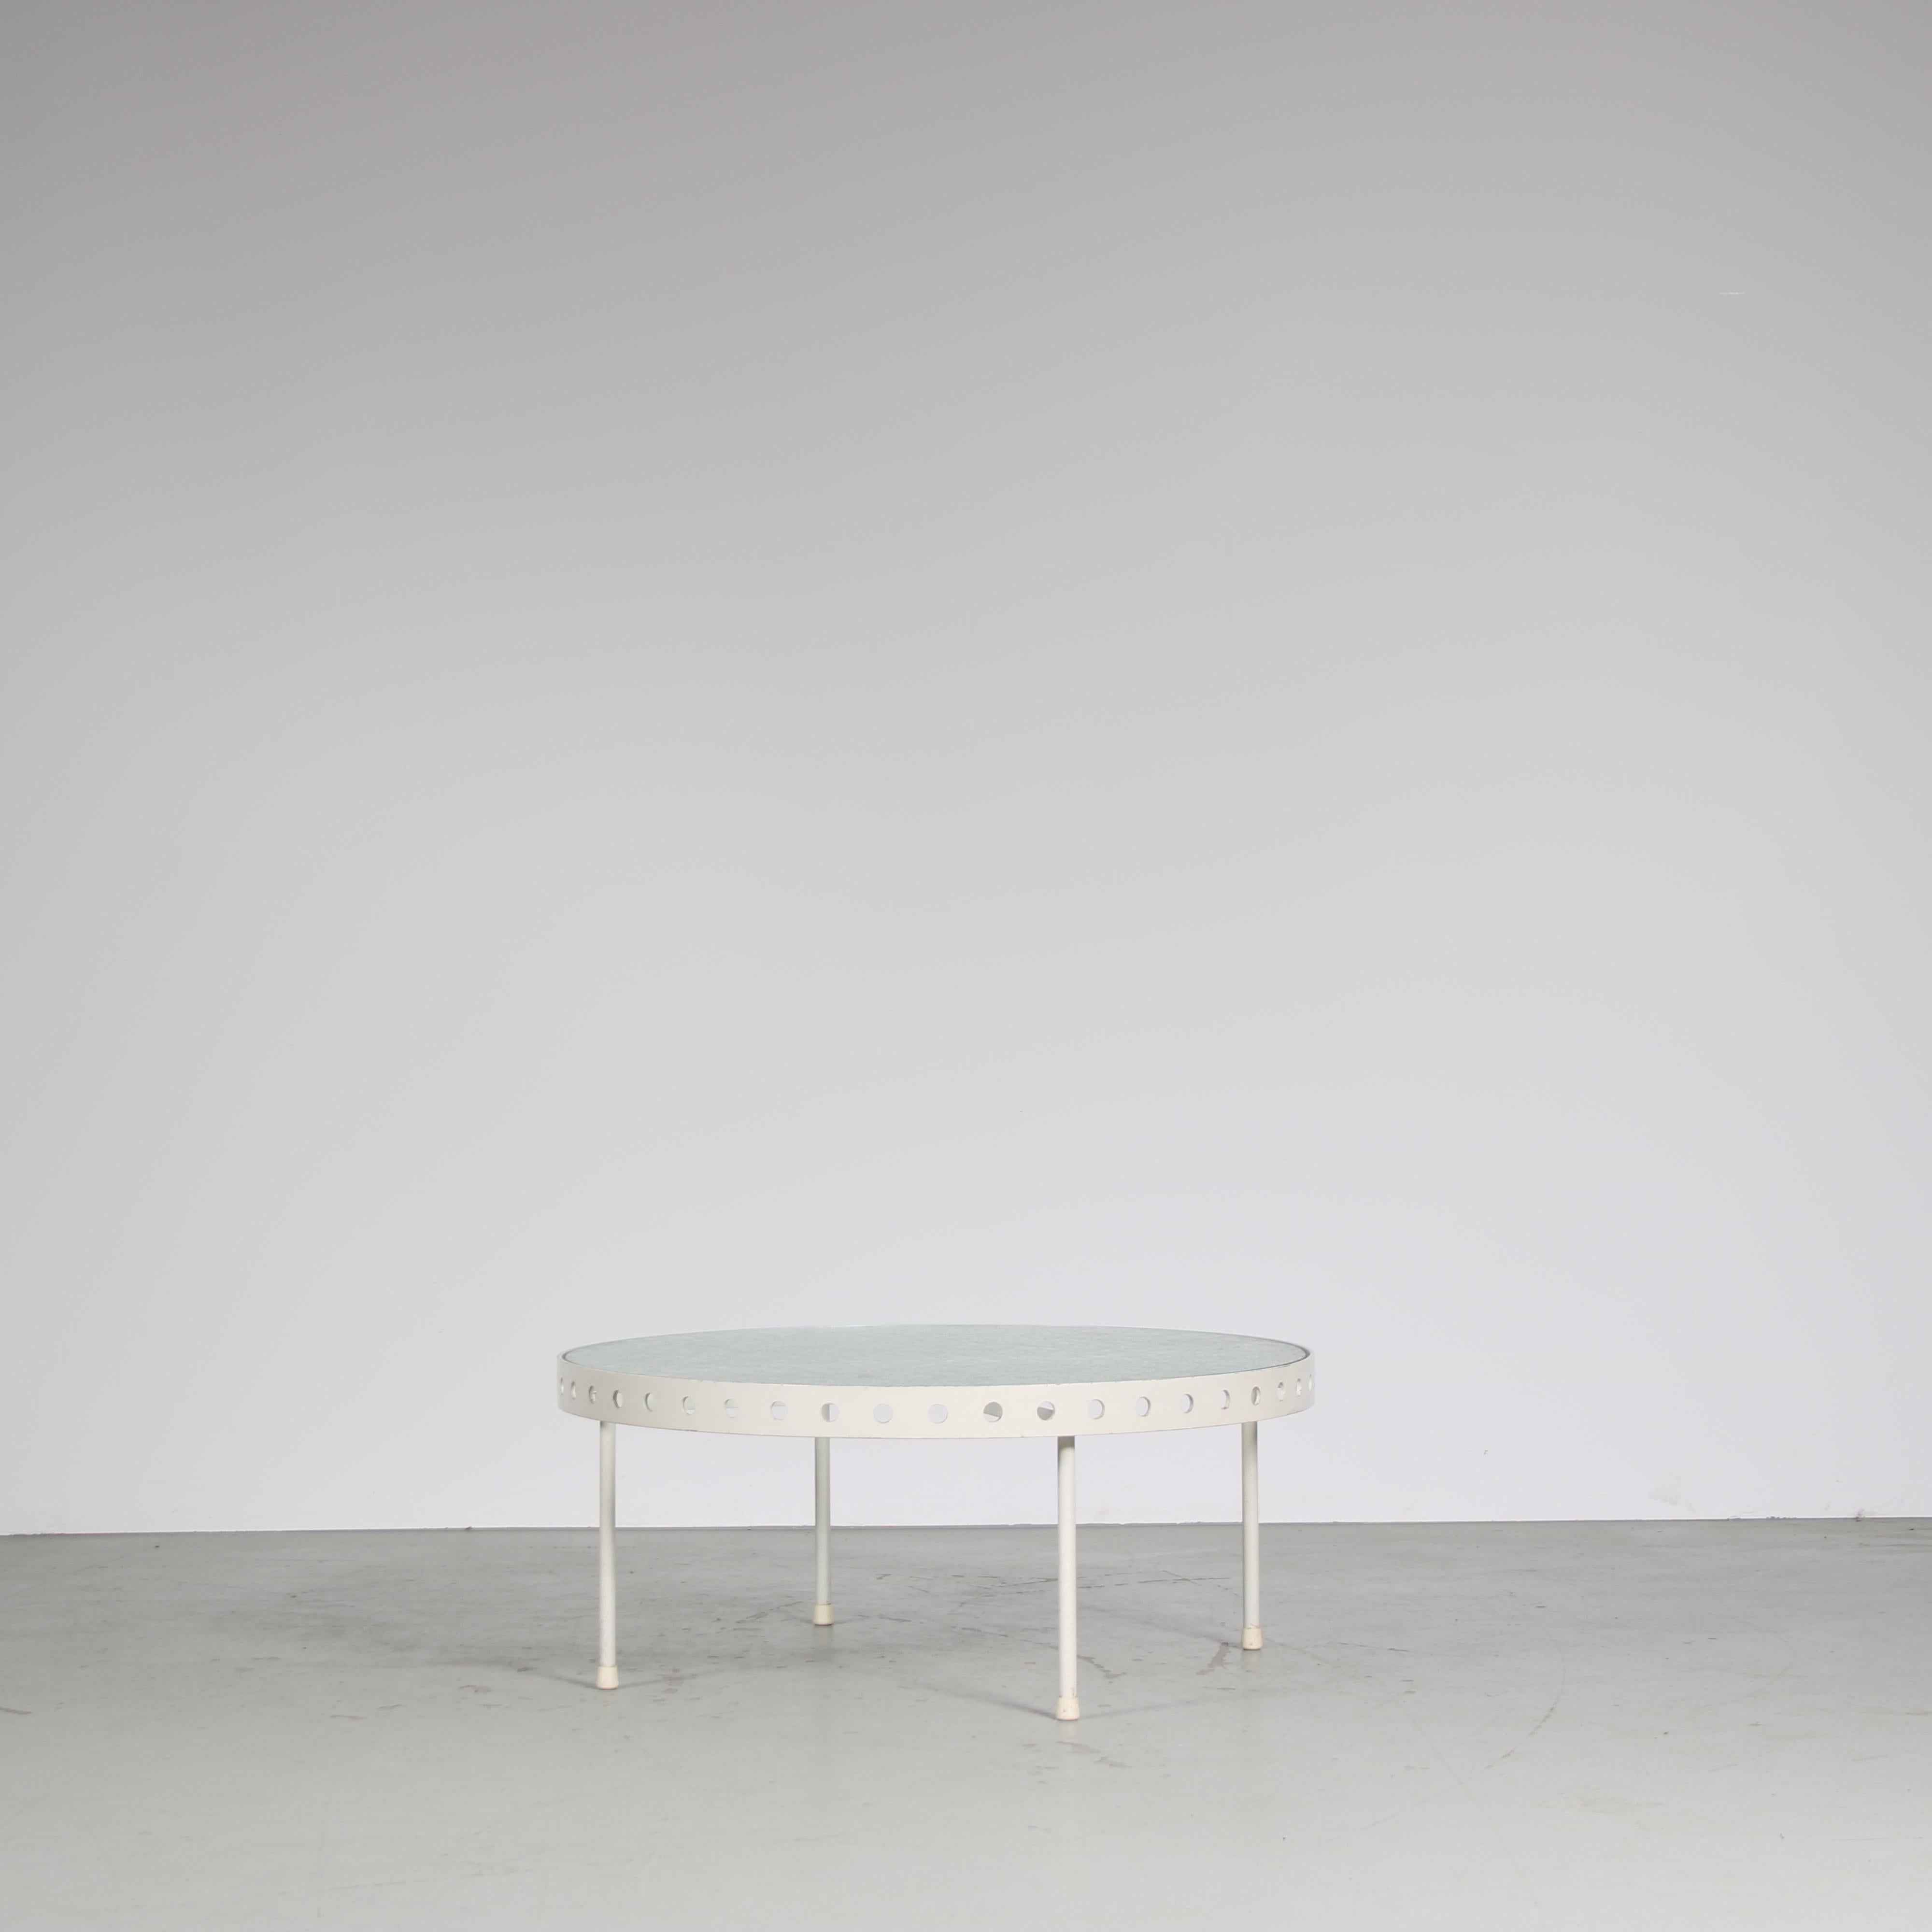 Une table basse qui attire l'attention, conçue par Janni van Pelt, fabriquée par MyHome aux Pays-Bas vers 1950.

Cette pièce de haute qualité présente une base en métal laqué blanc avec un plateau rond en verre flou. La base en métal comporte quatre